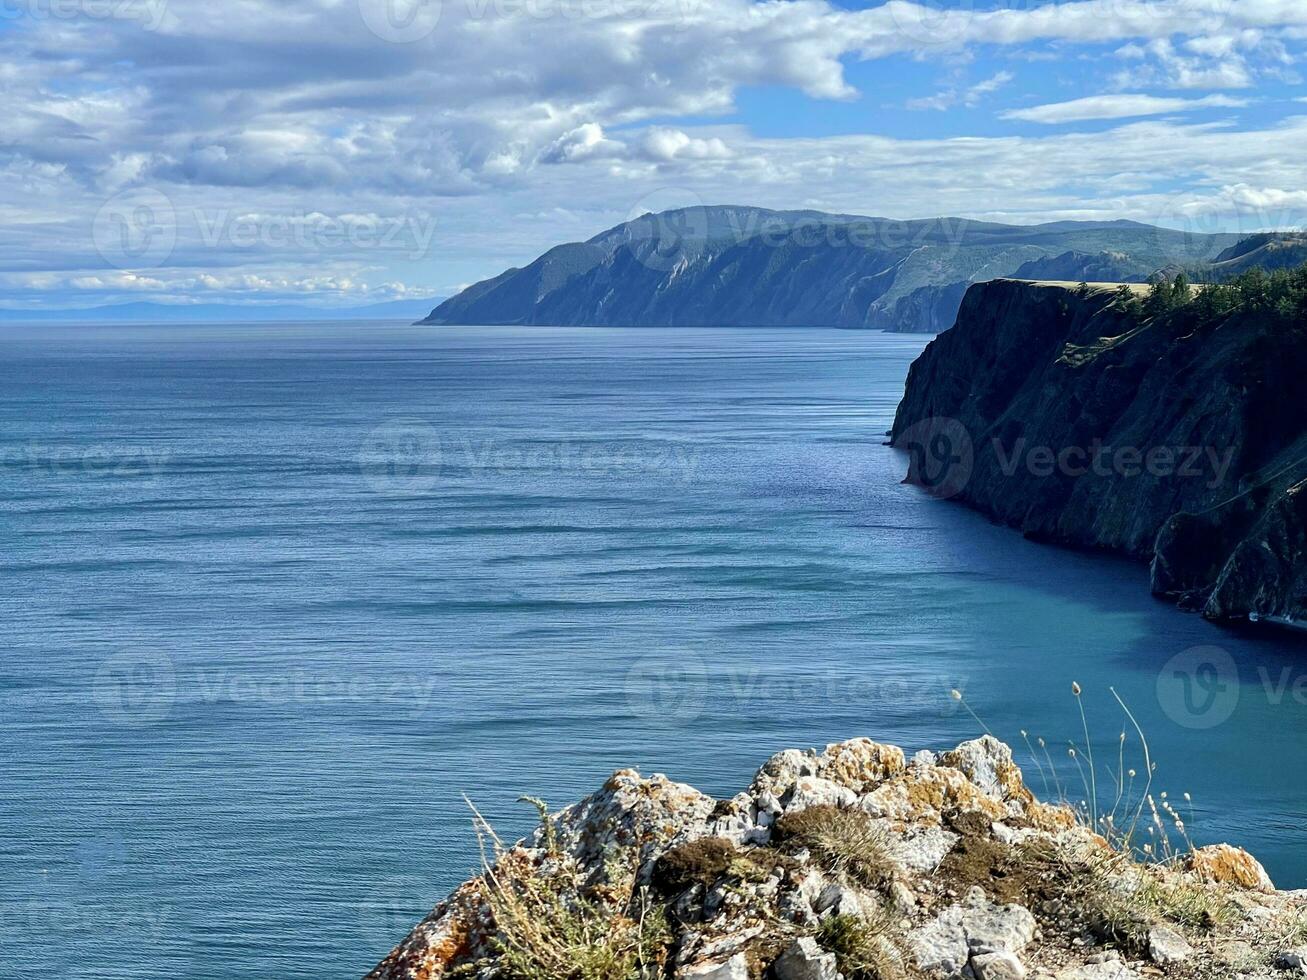 schön Aussicht von See Baikal, Kap Khoboy, Olchon, Russland foto